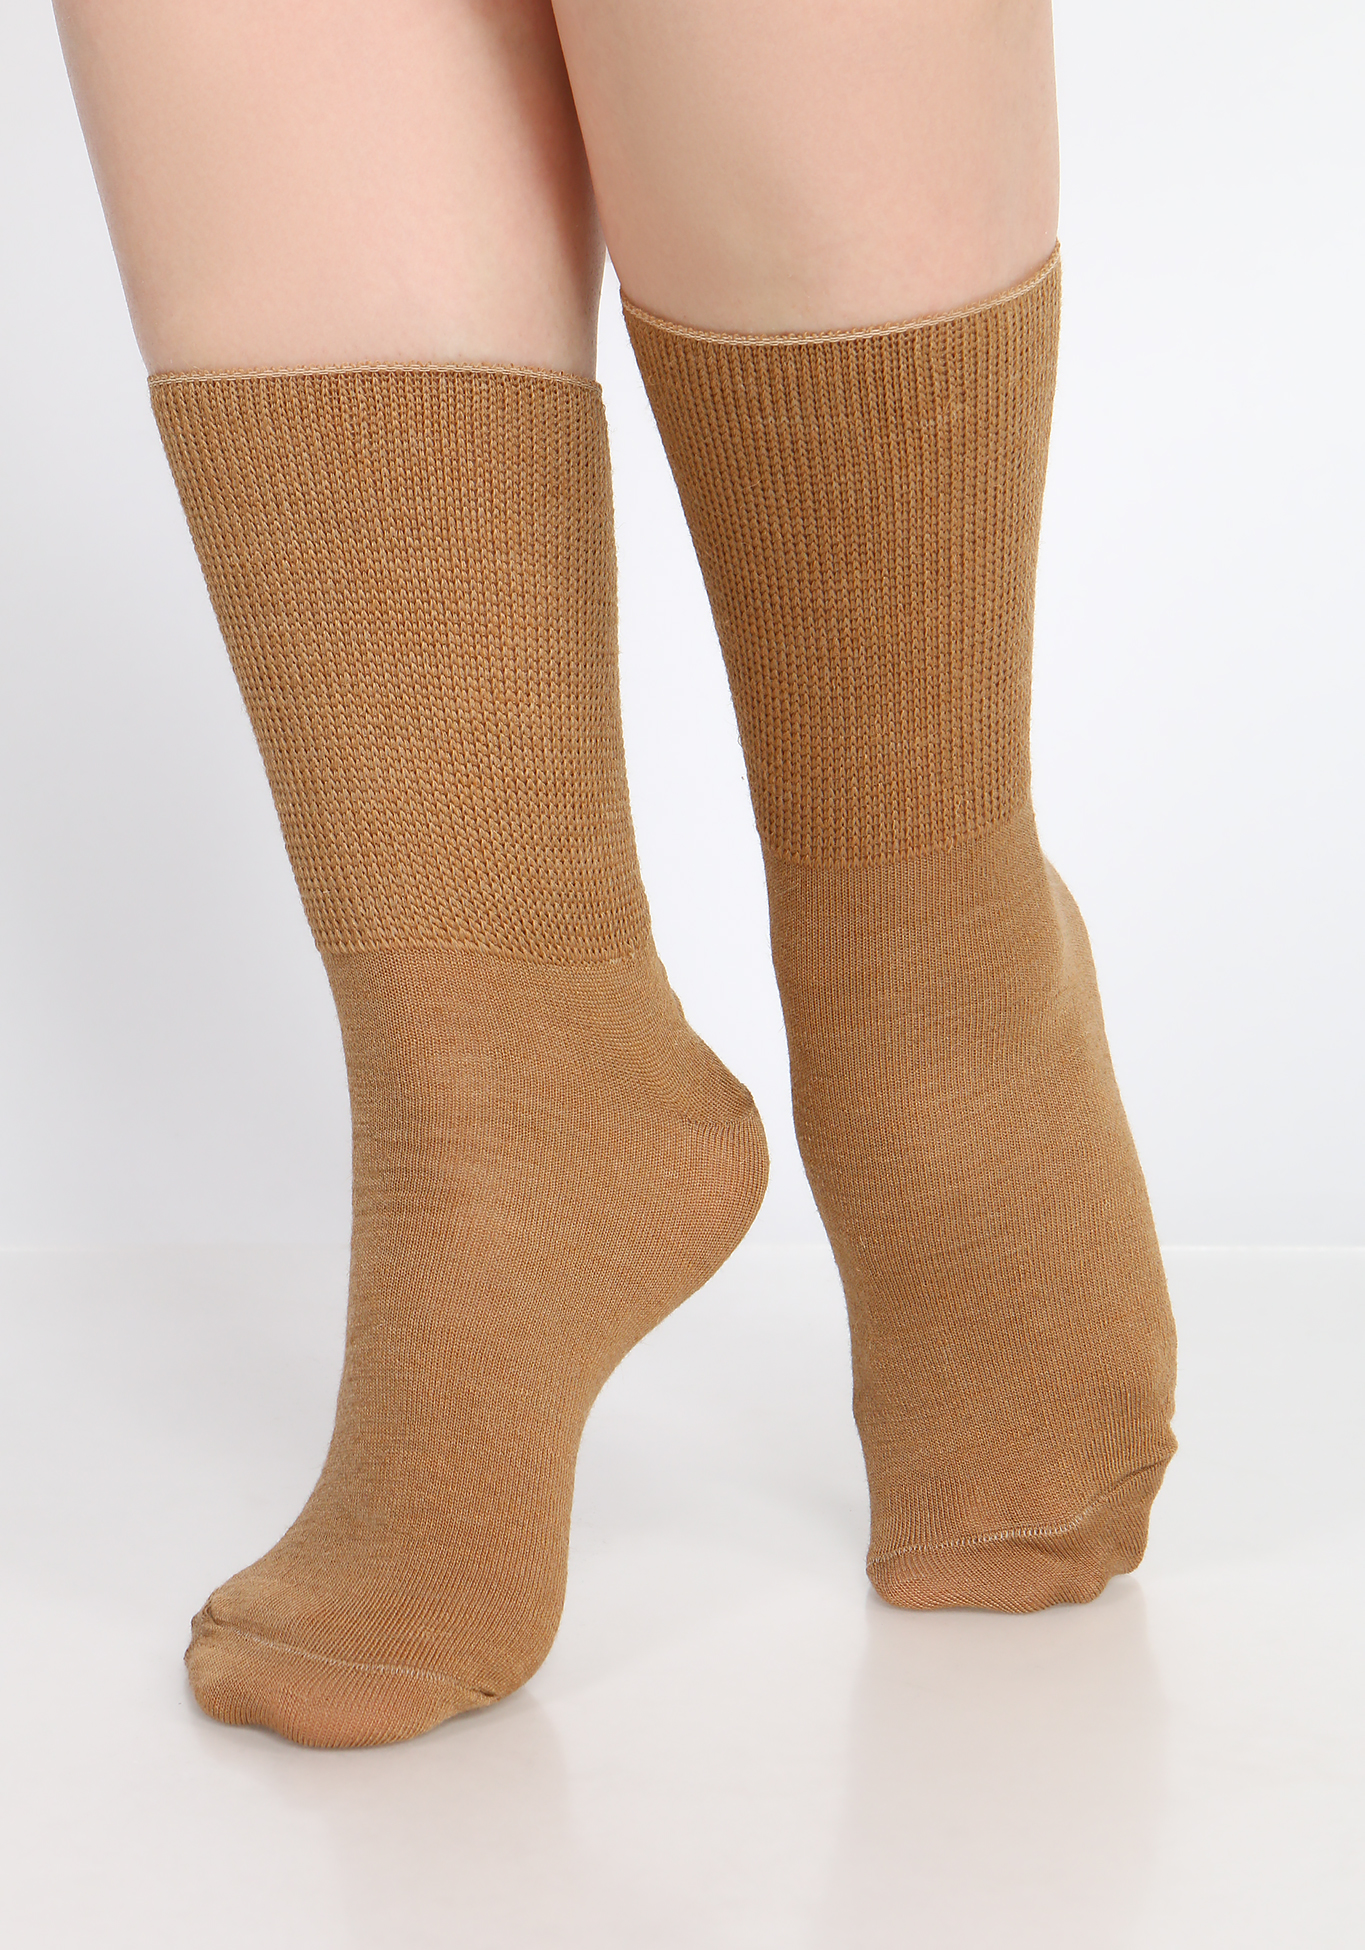 Носки на полную ногу из верблюжьей шерсти, 2 пары Центр Доктор, размер 44-45 - фото 1